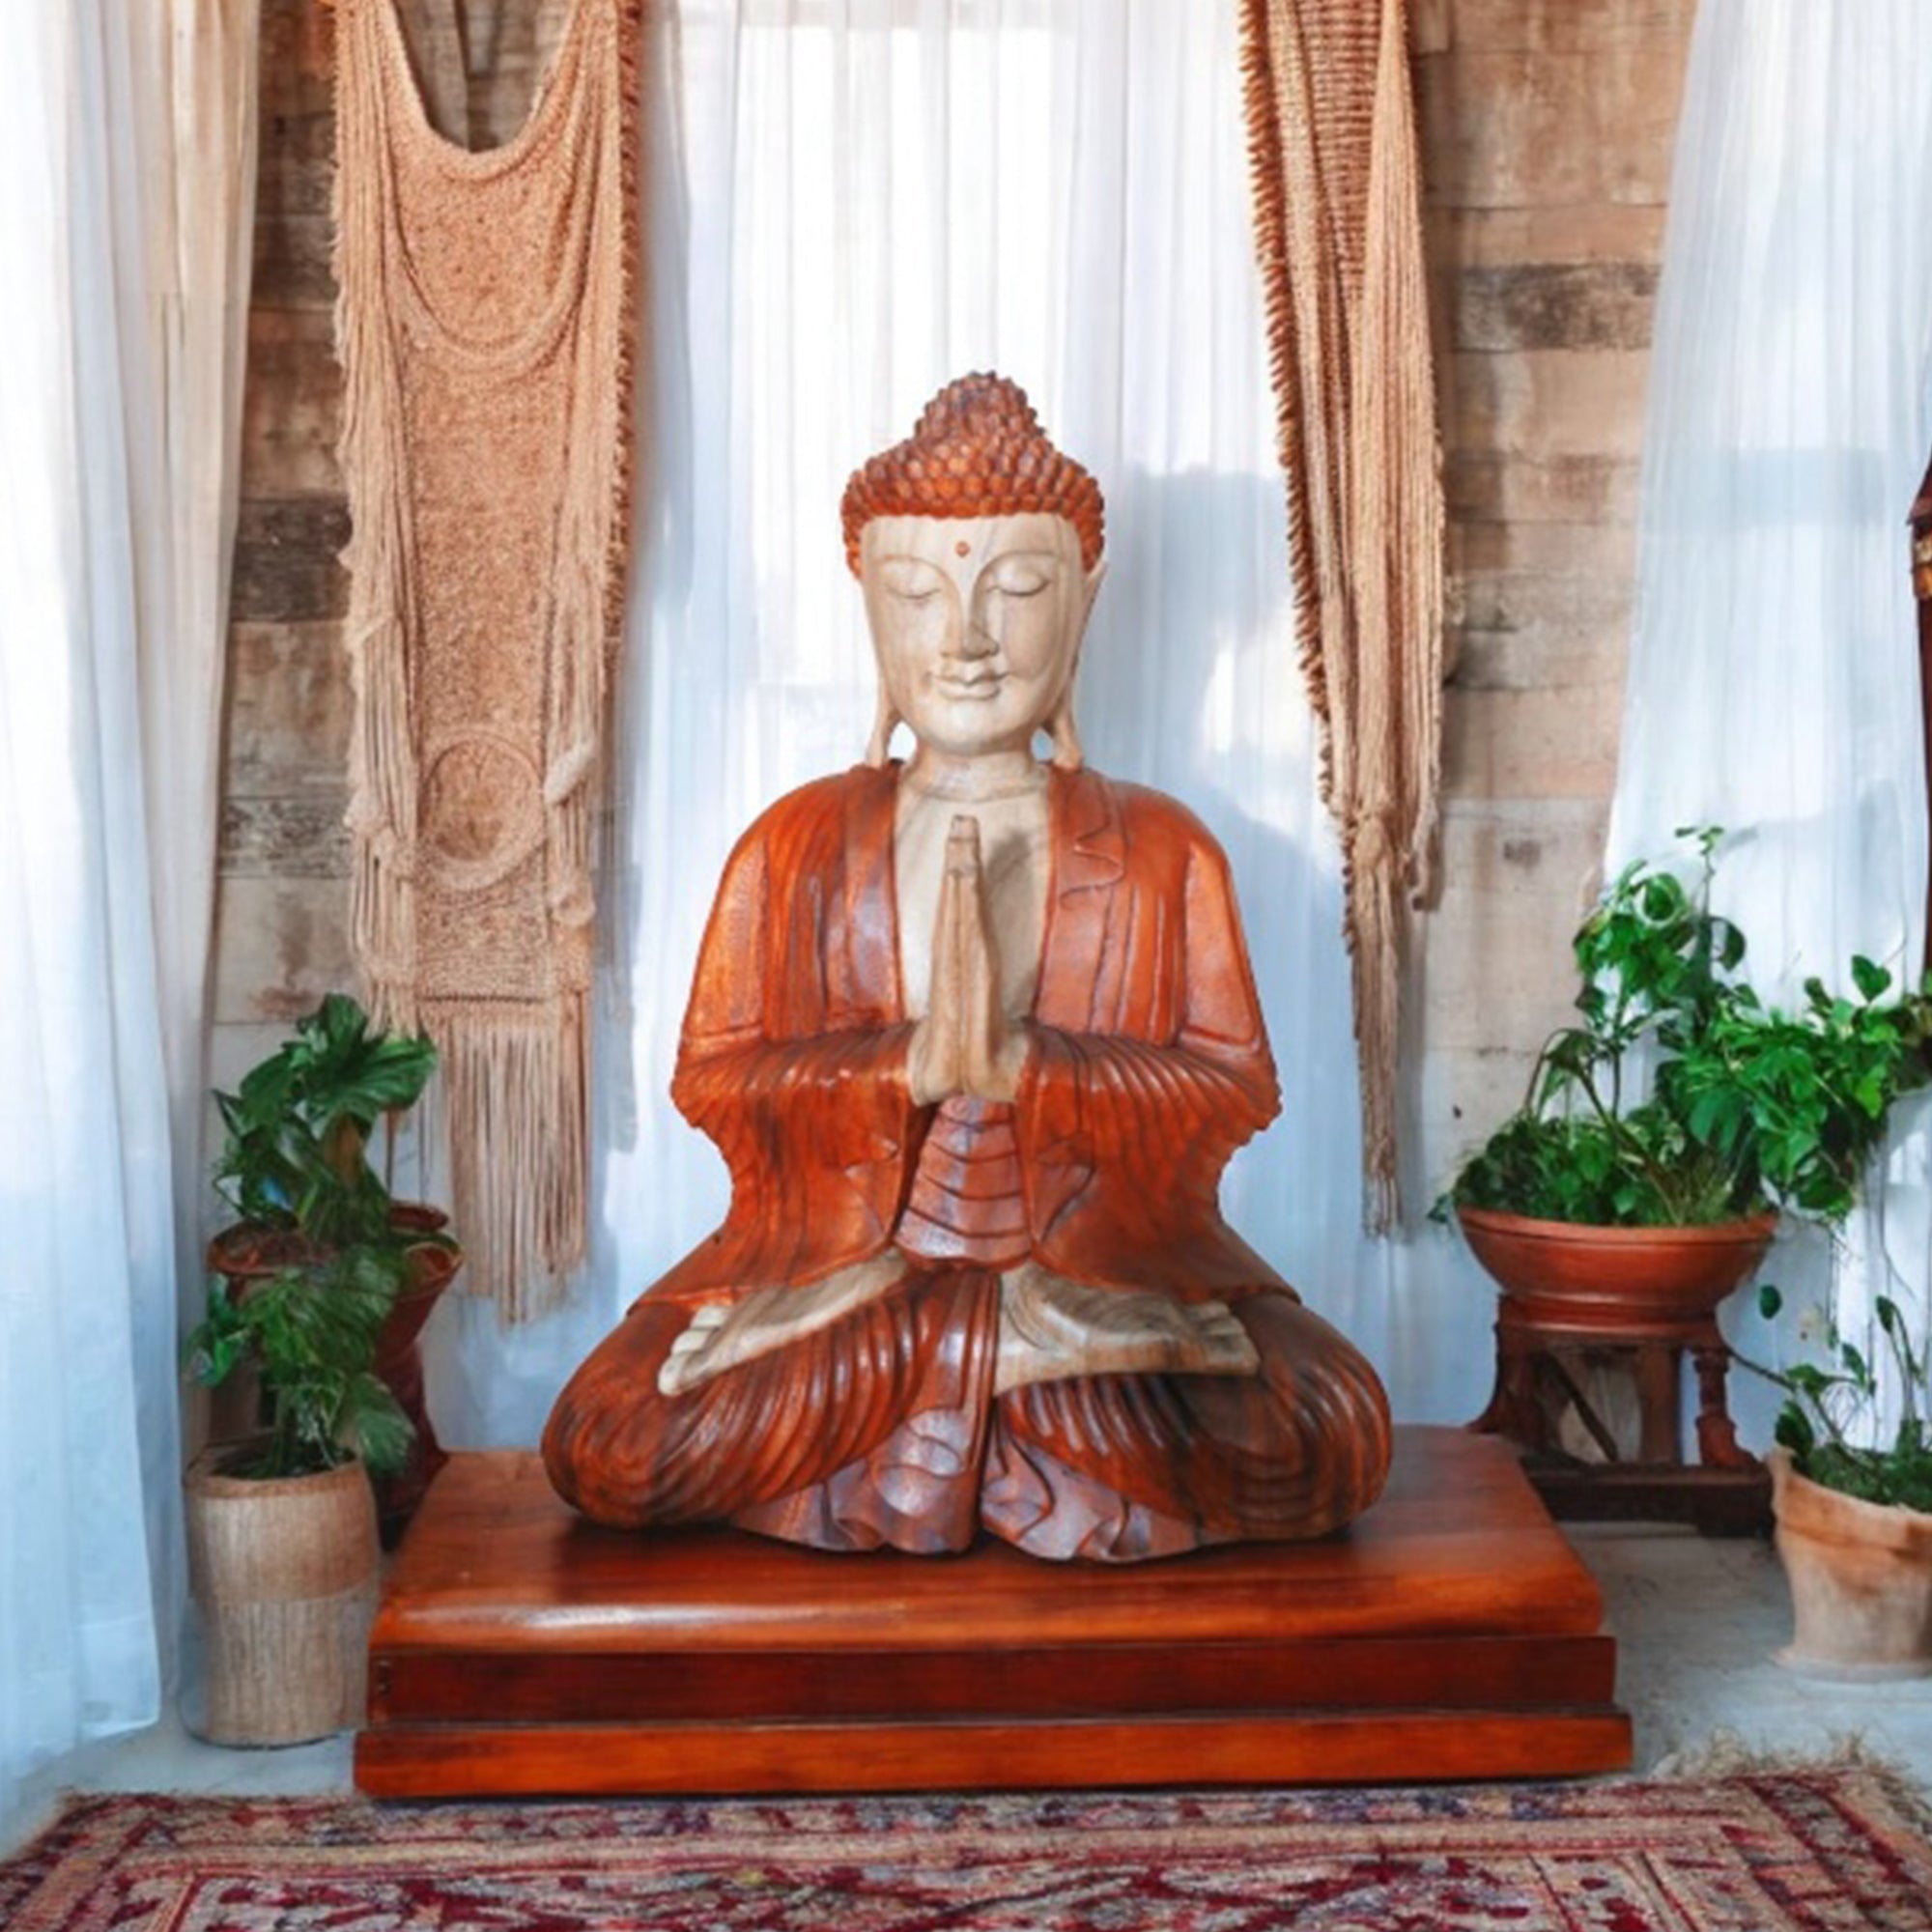 Solid Wood Buddha Statue - Large Wooden Buddha Statuette - Buddha Home Decor - Buddha Gifts